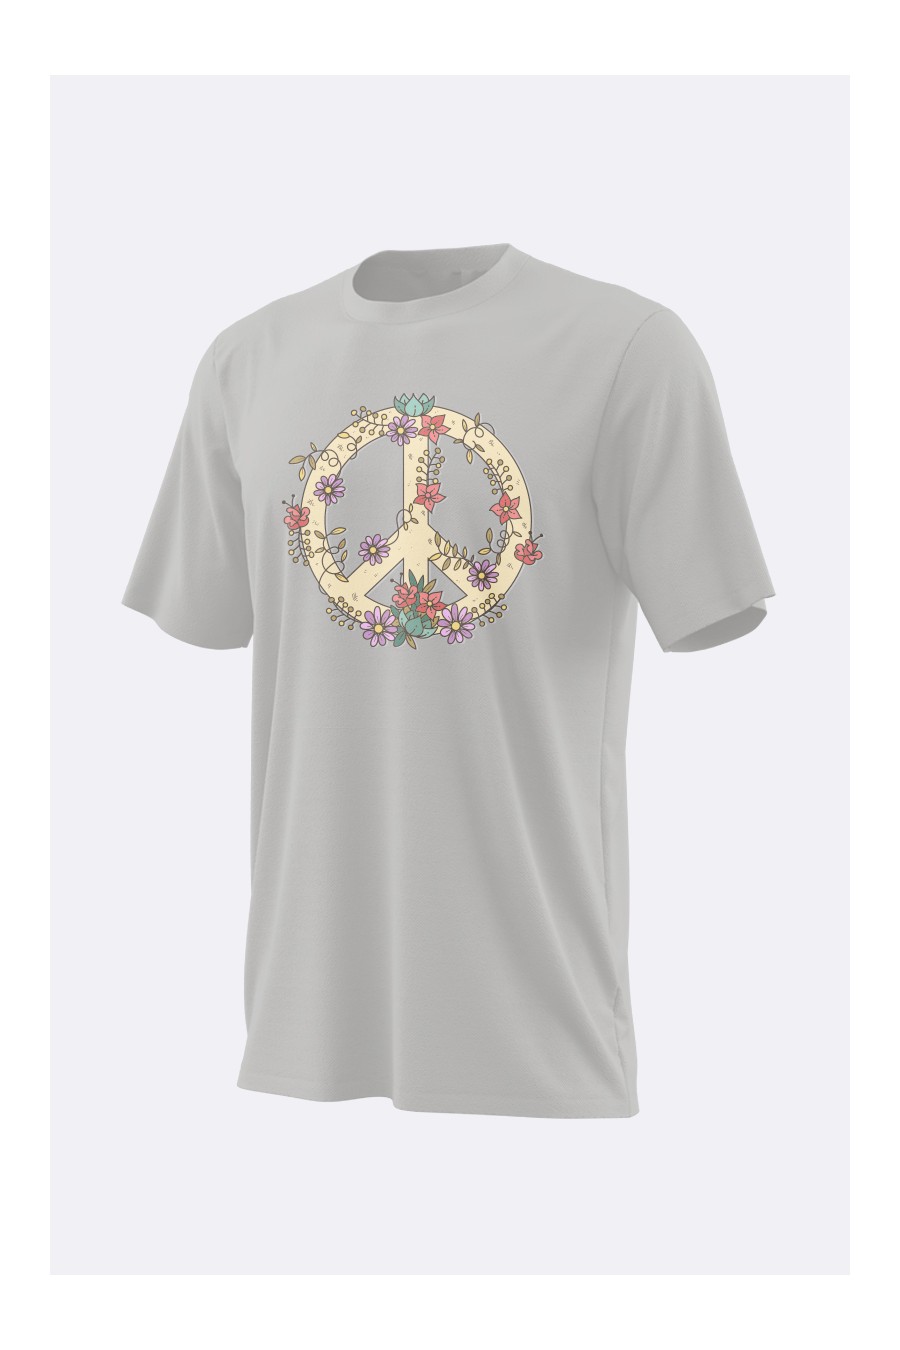 Camiseta Hippi - Camiseta RotusolLaboral.com Color Gris Vigore